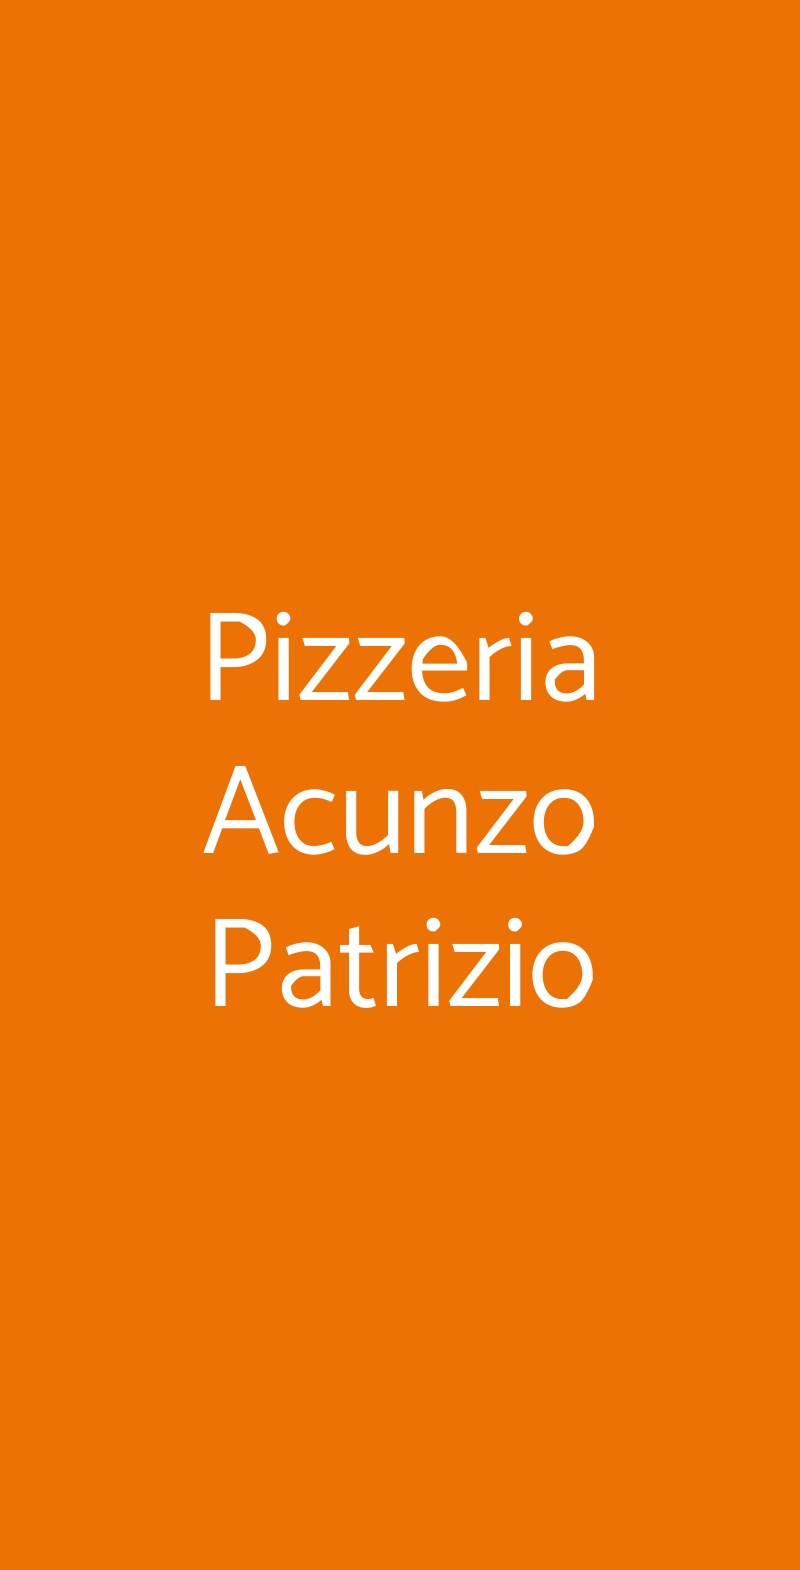 Pizzeria Acunzo Patrizio Napoli menù 1 pagina